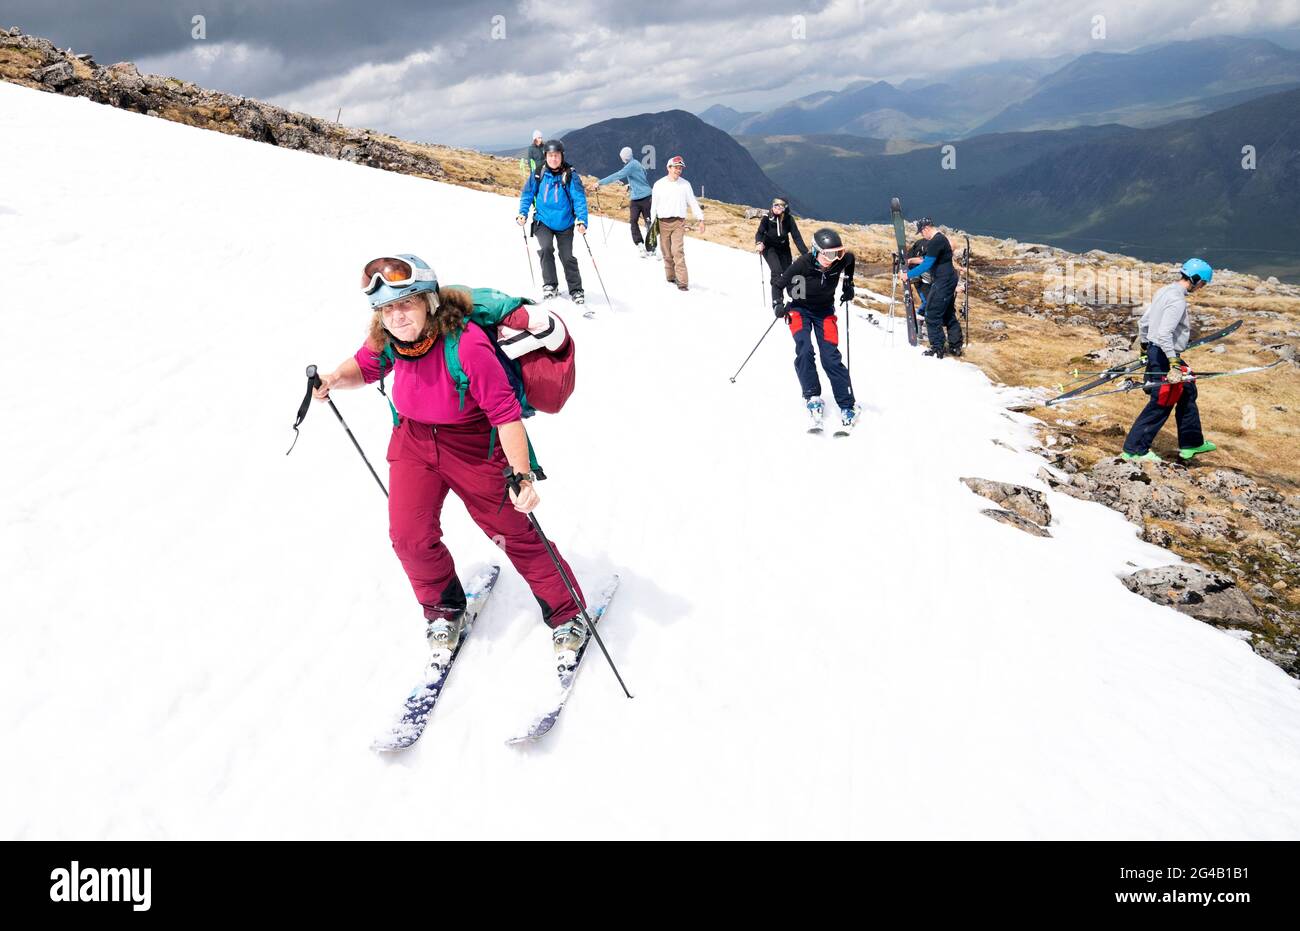 Joyce Paton, de Peterhead, sur l'un des restes de neige sur Meall a'Bhuiridh à Glencoe pendant le ski de mi-été. L'événement, organisé par le Glencoe Mountain Resort, se tient chaque année le week-end le plus proche du solstice d'été. Date de la photo: Dimanche 20 juin 2021. Banque D'Images